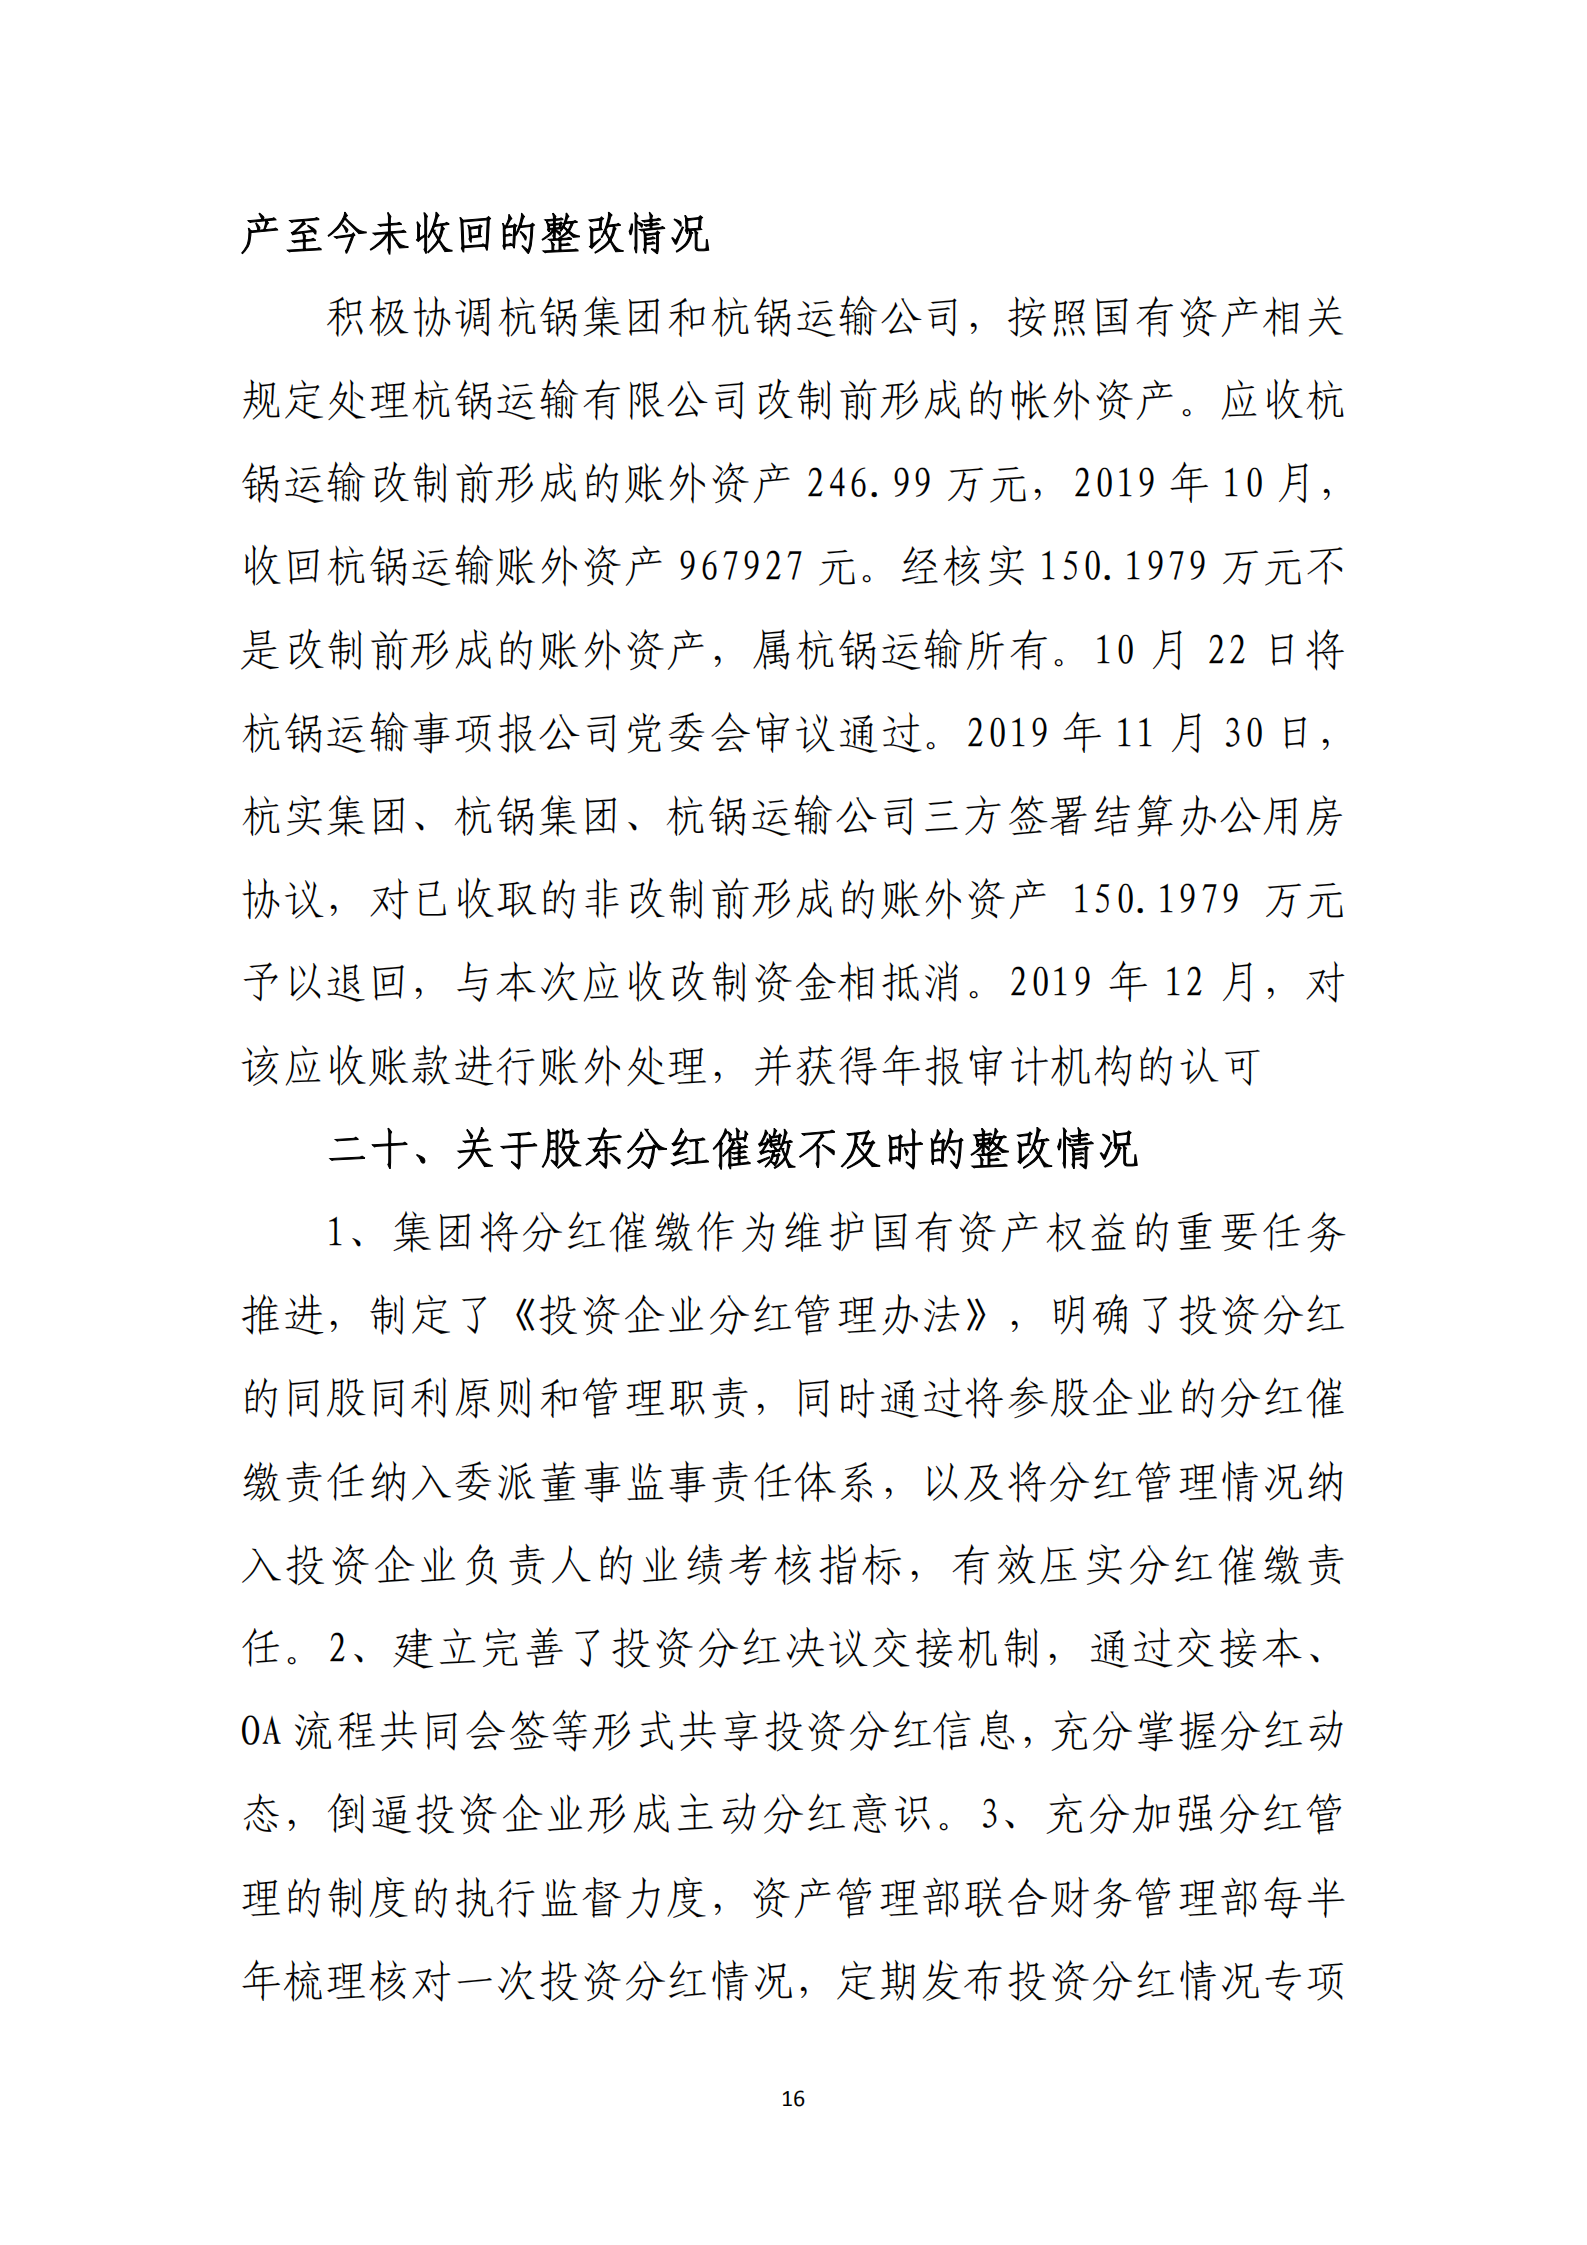 博乐体育网页【中国】有限公司党委关于巡察整改情况的通报_15.png